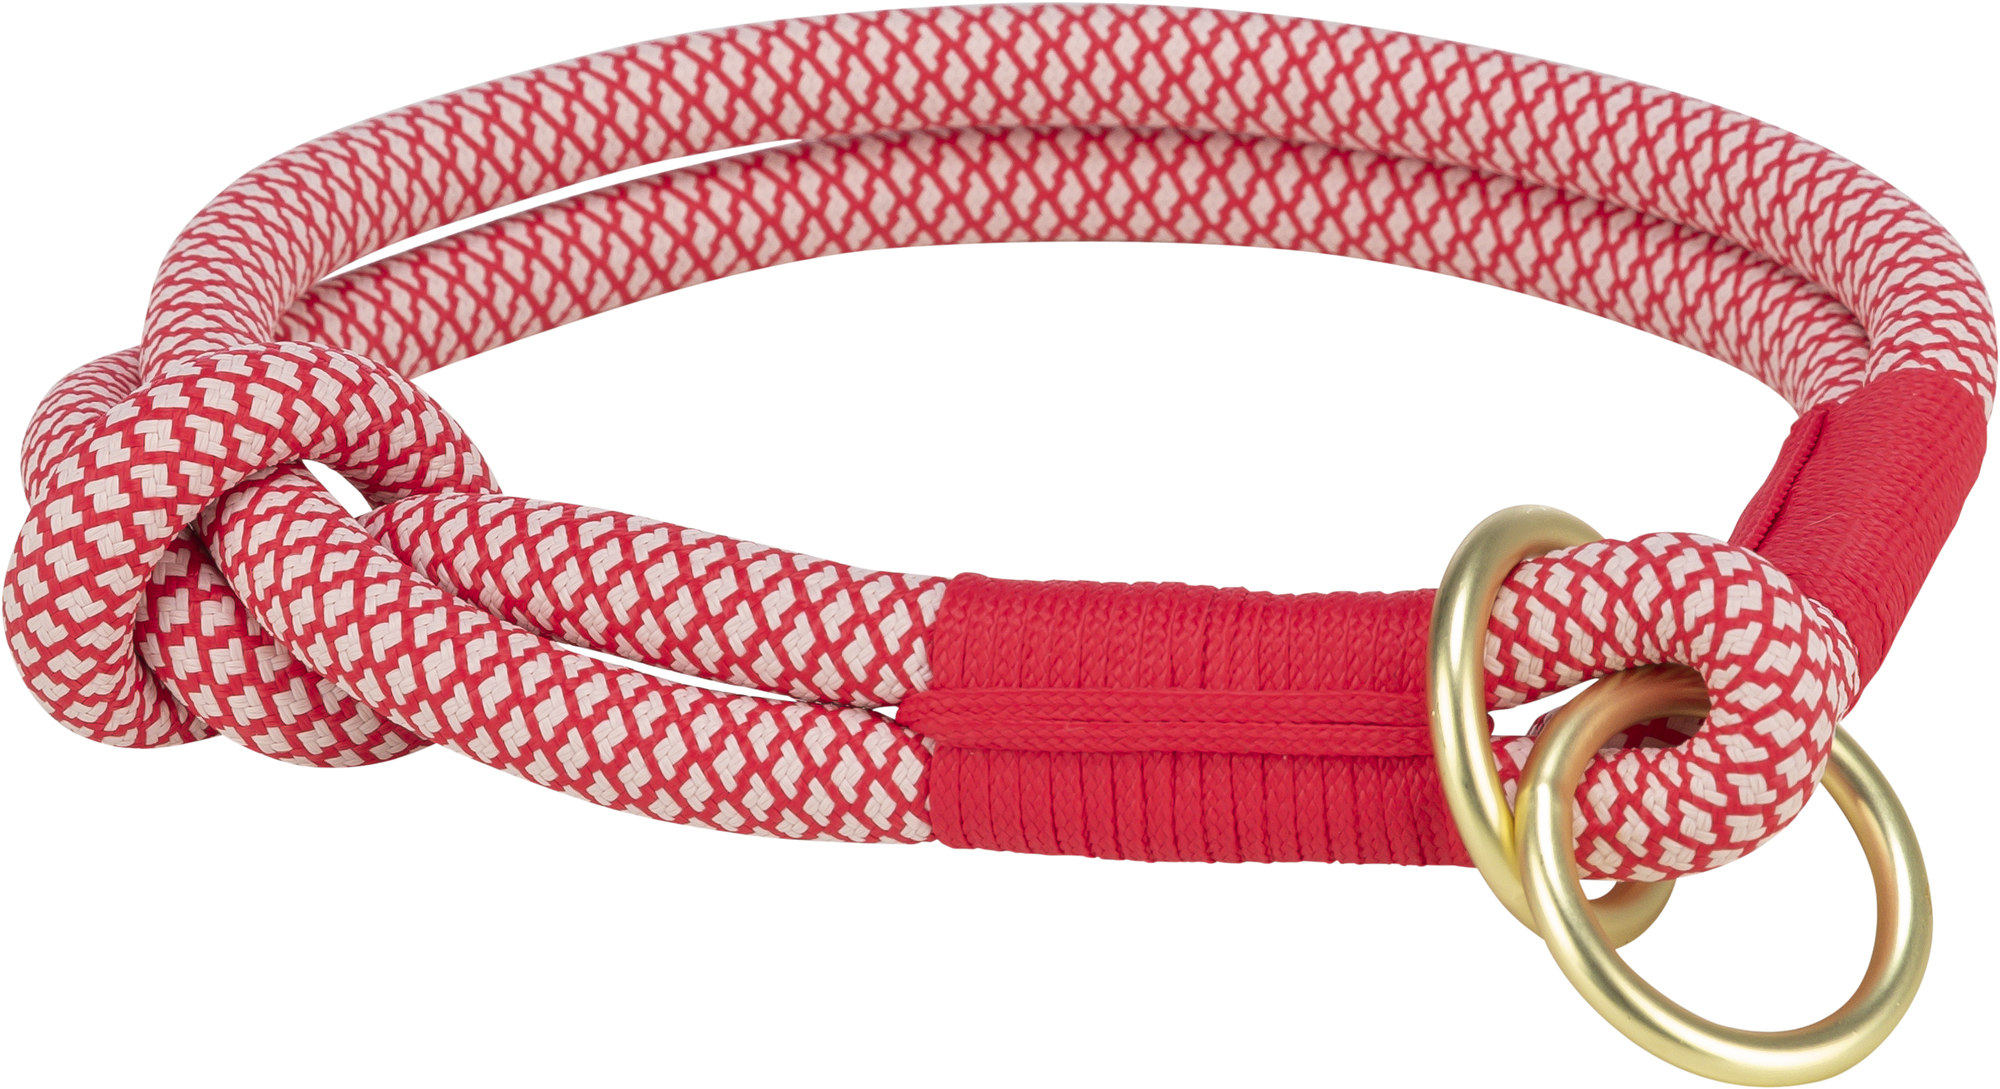 Soft Rope collier semi-étrangleur - Rouge/crème